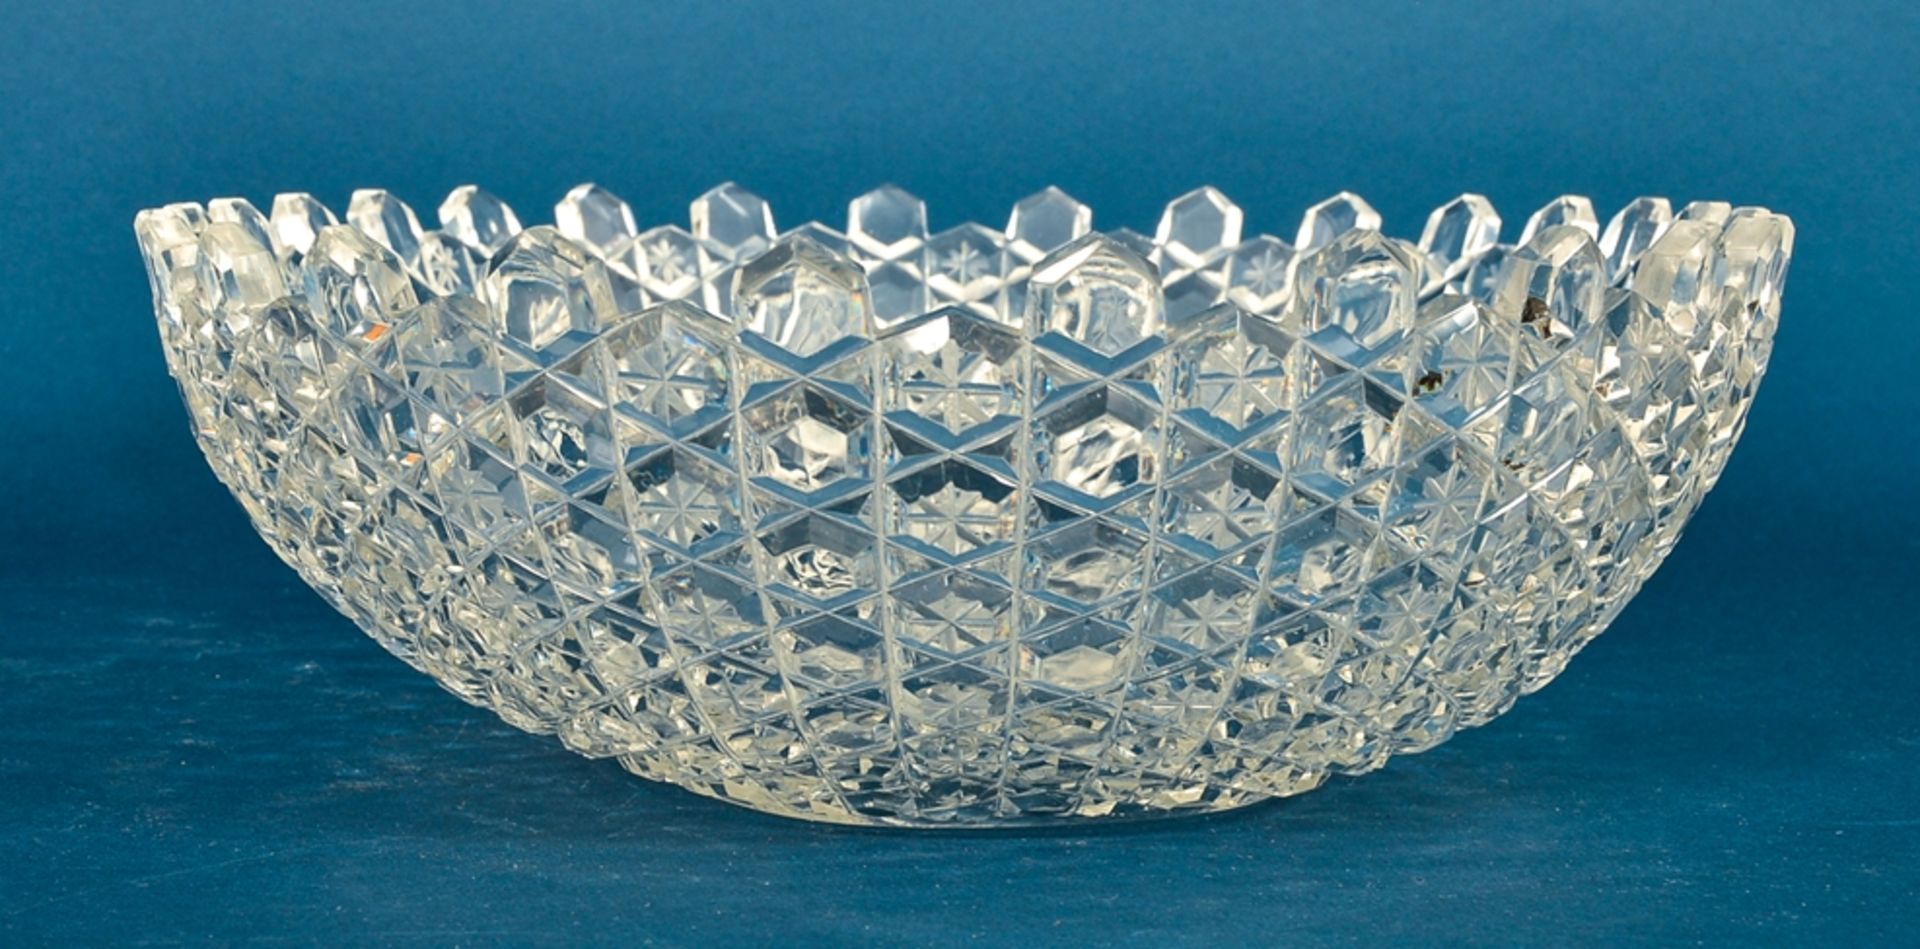 Große, ovale Kristallglas Schüssel, Länge ca. 38 cm, sehr schöner Erhalt, wohl 1930er Jahre. - Image 2 of 4